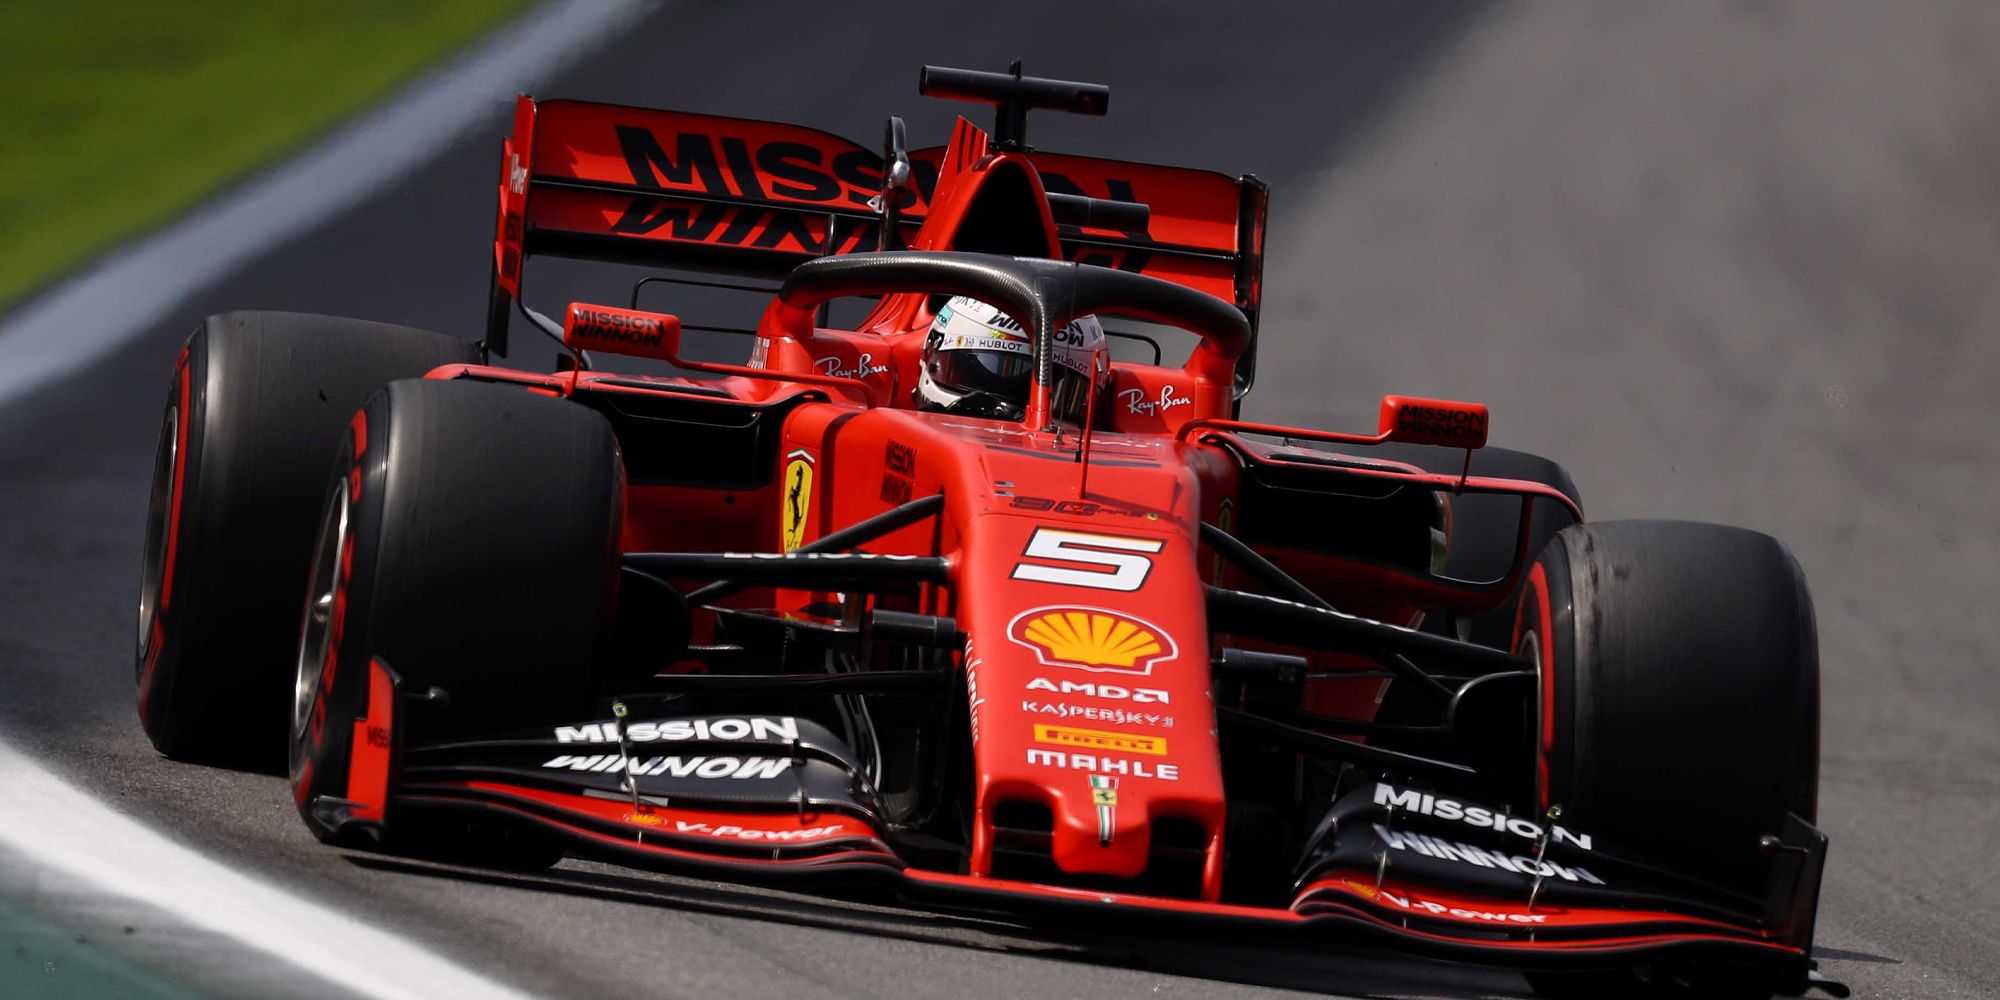 A Scuderia Ferrari F1 car on track